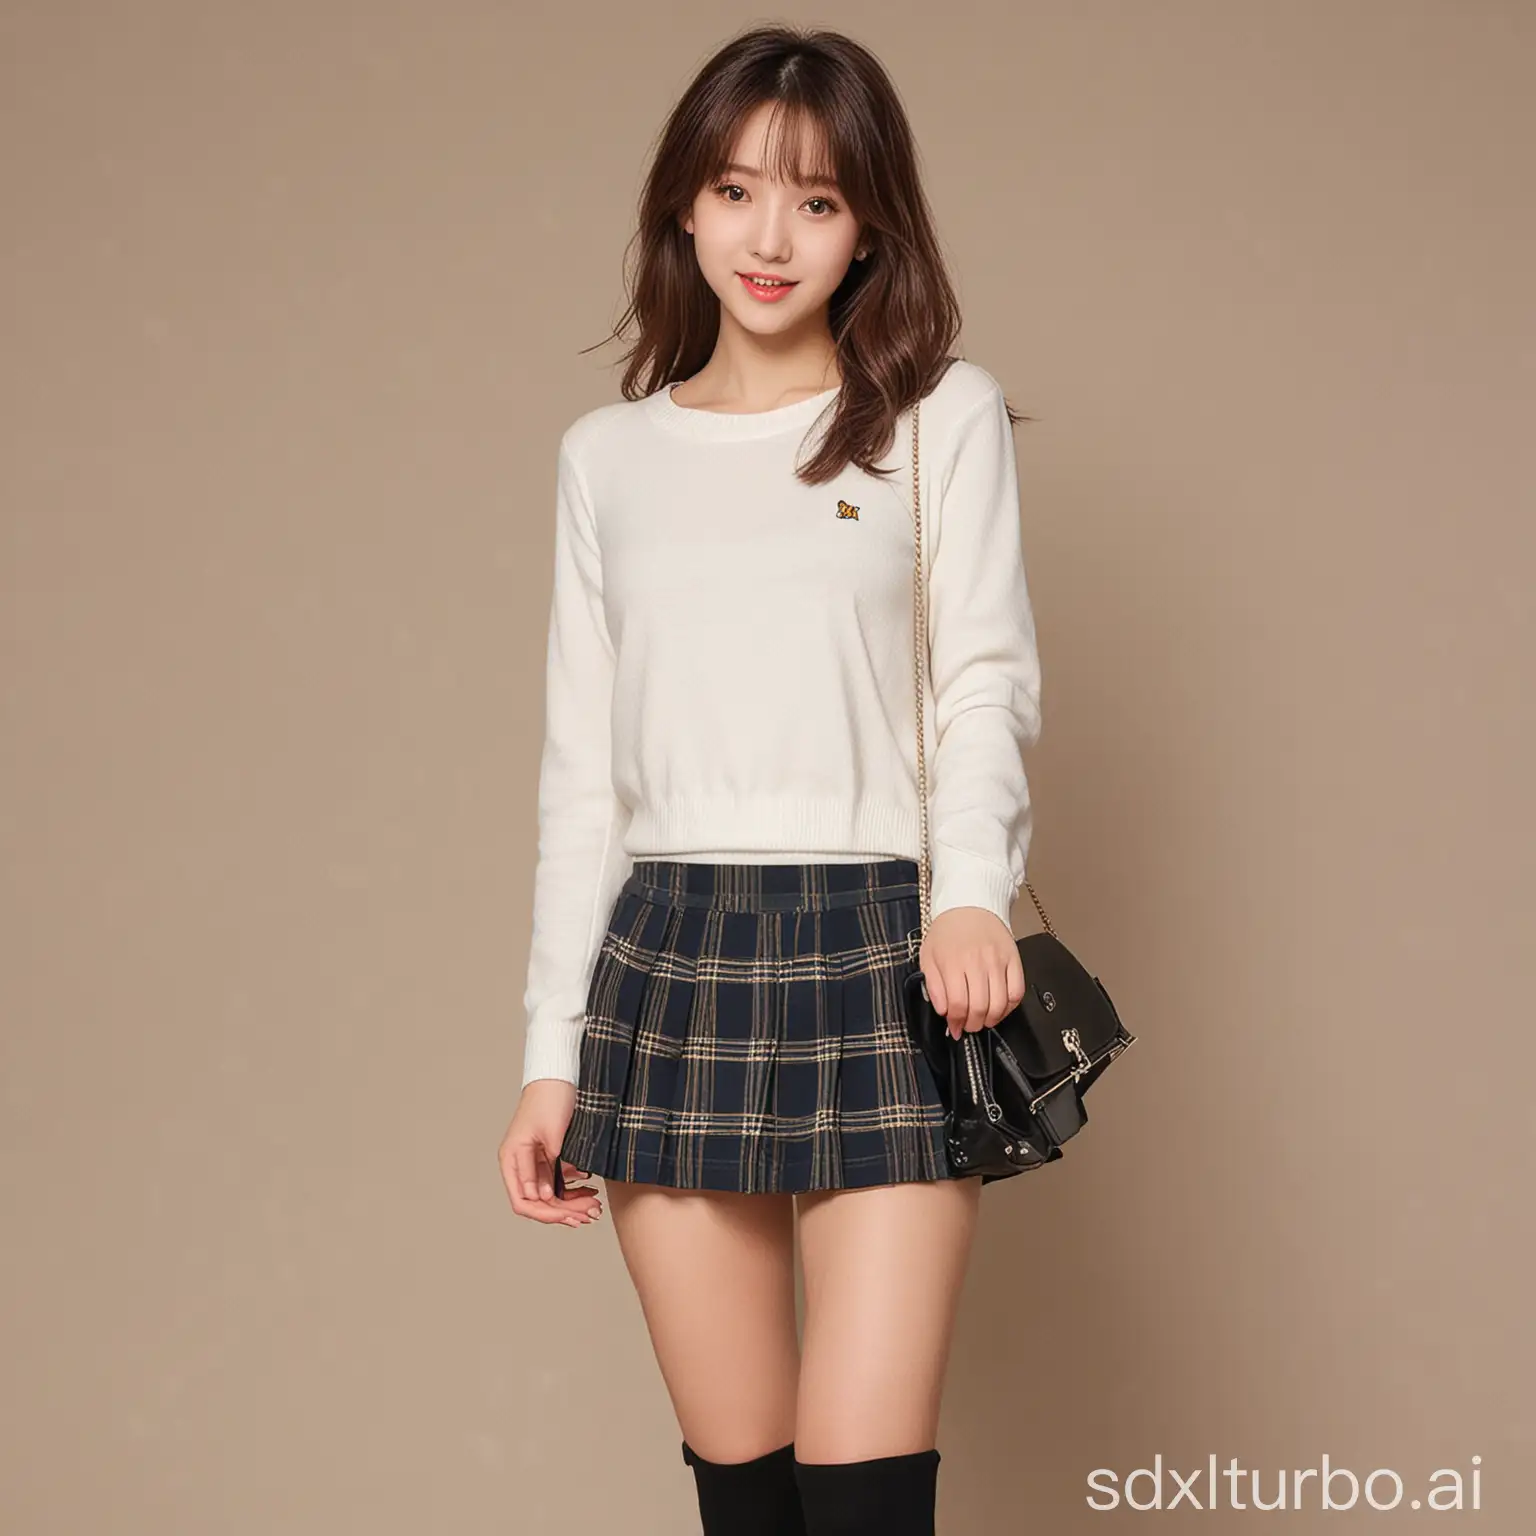 A girl wearing a JK short skirt, cute and tempting